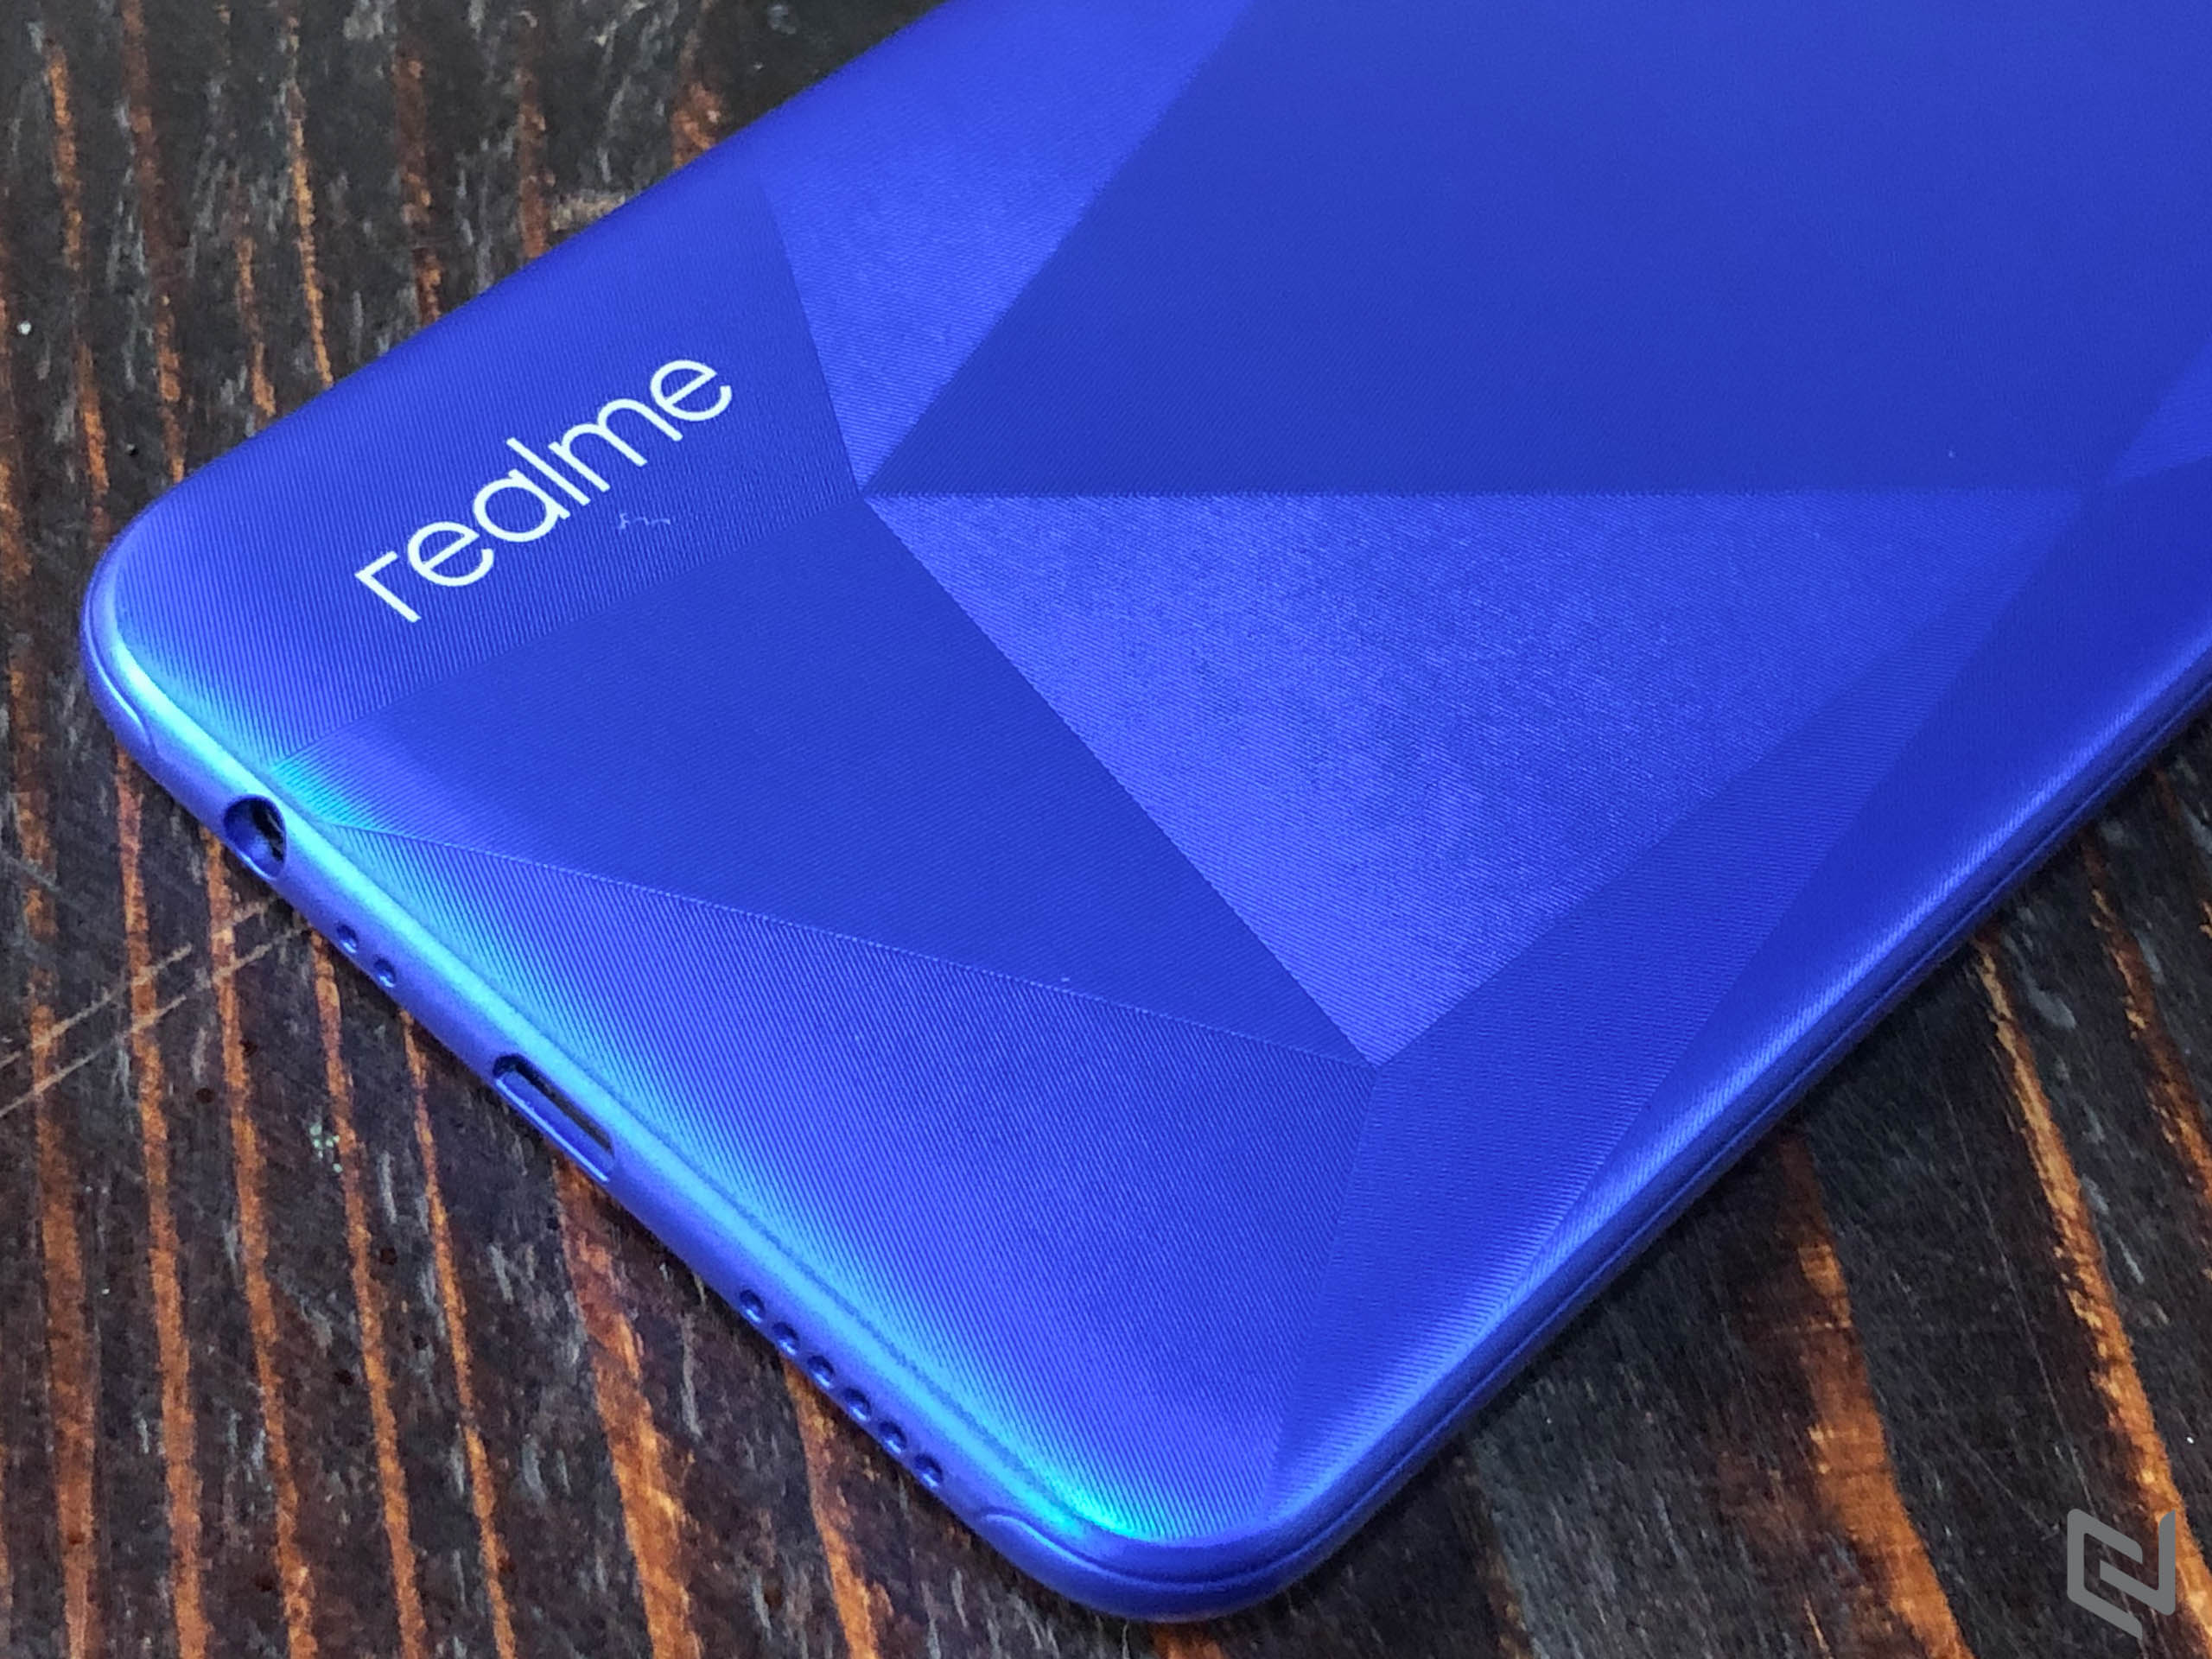 Realme hé lộ về một smartphone với 4 camera sau, độ phân giải lên đến 64MP